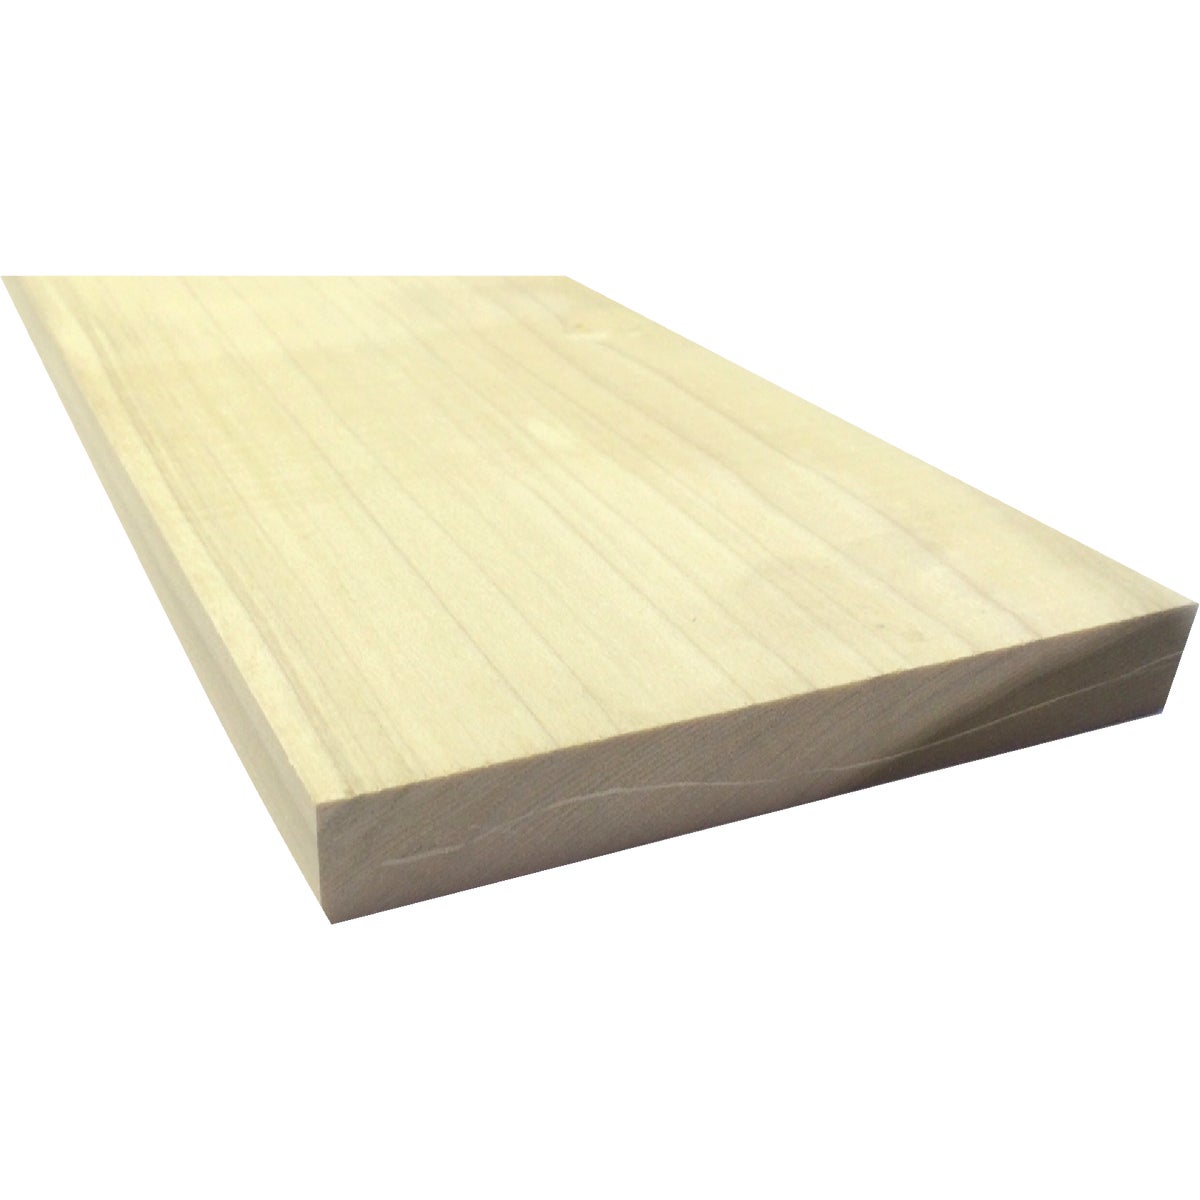 Waddell 1 In. x 6 In. x 3 Ft. Poplar Wood Board